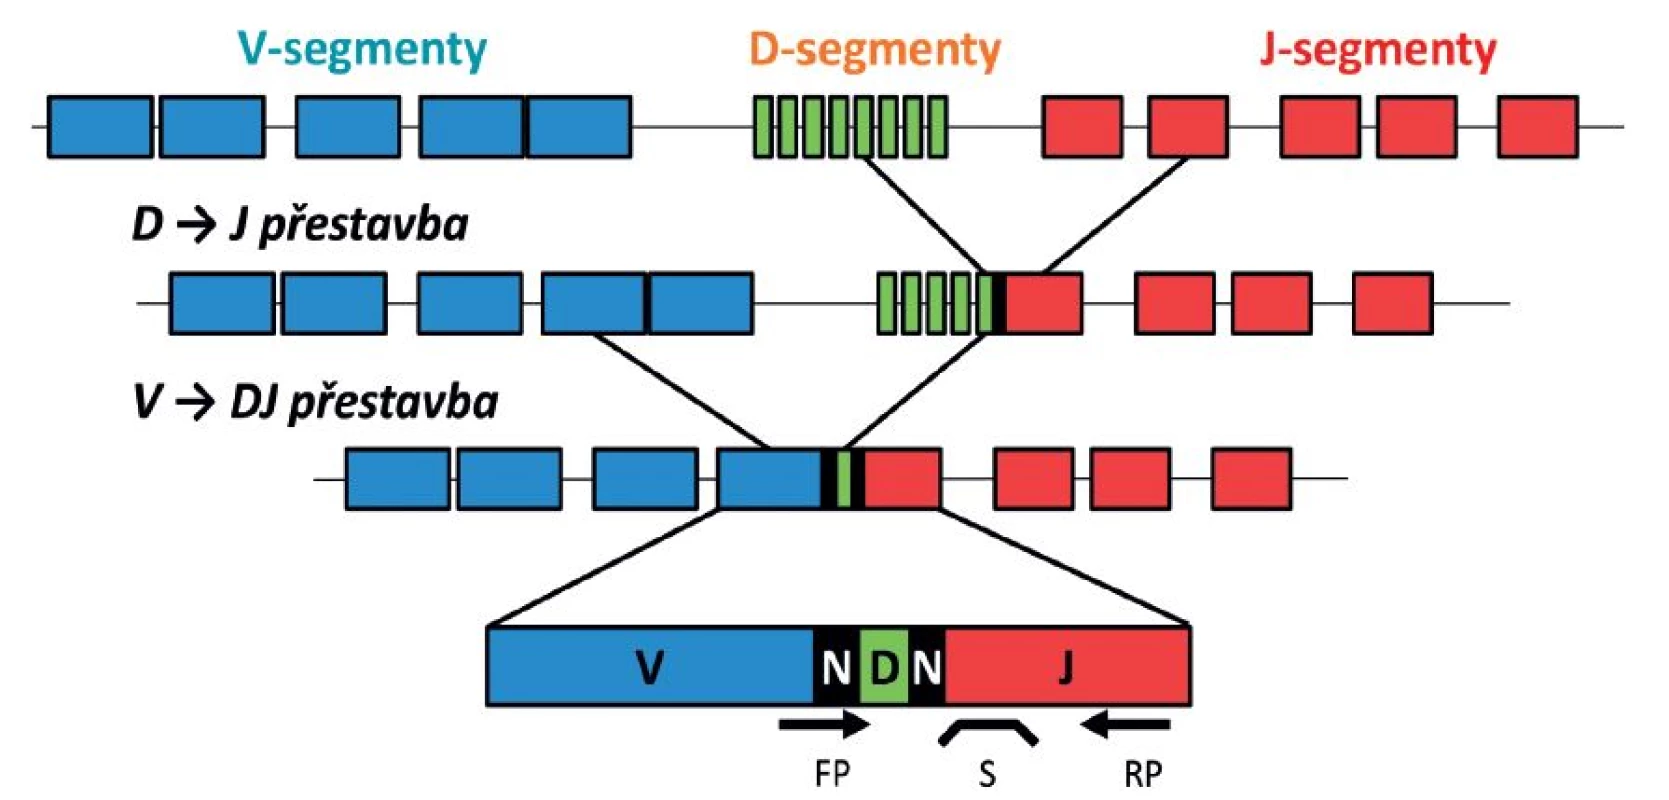 Schéma V-D-J přestavby imunoreceptorového genu a naznačení polohy primerů a sondy pro detekci MRN.